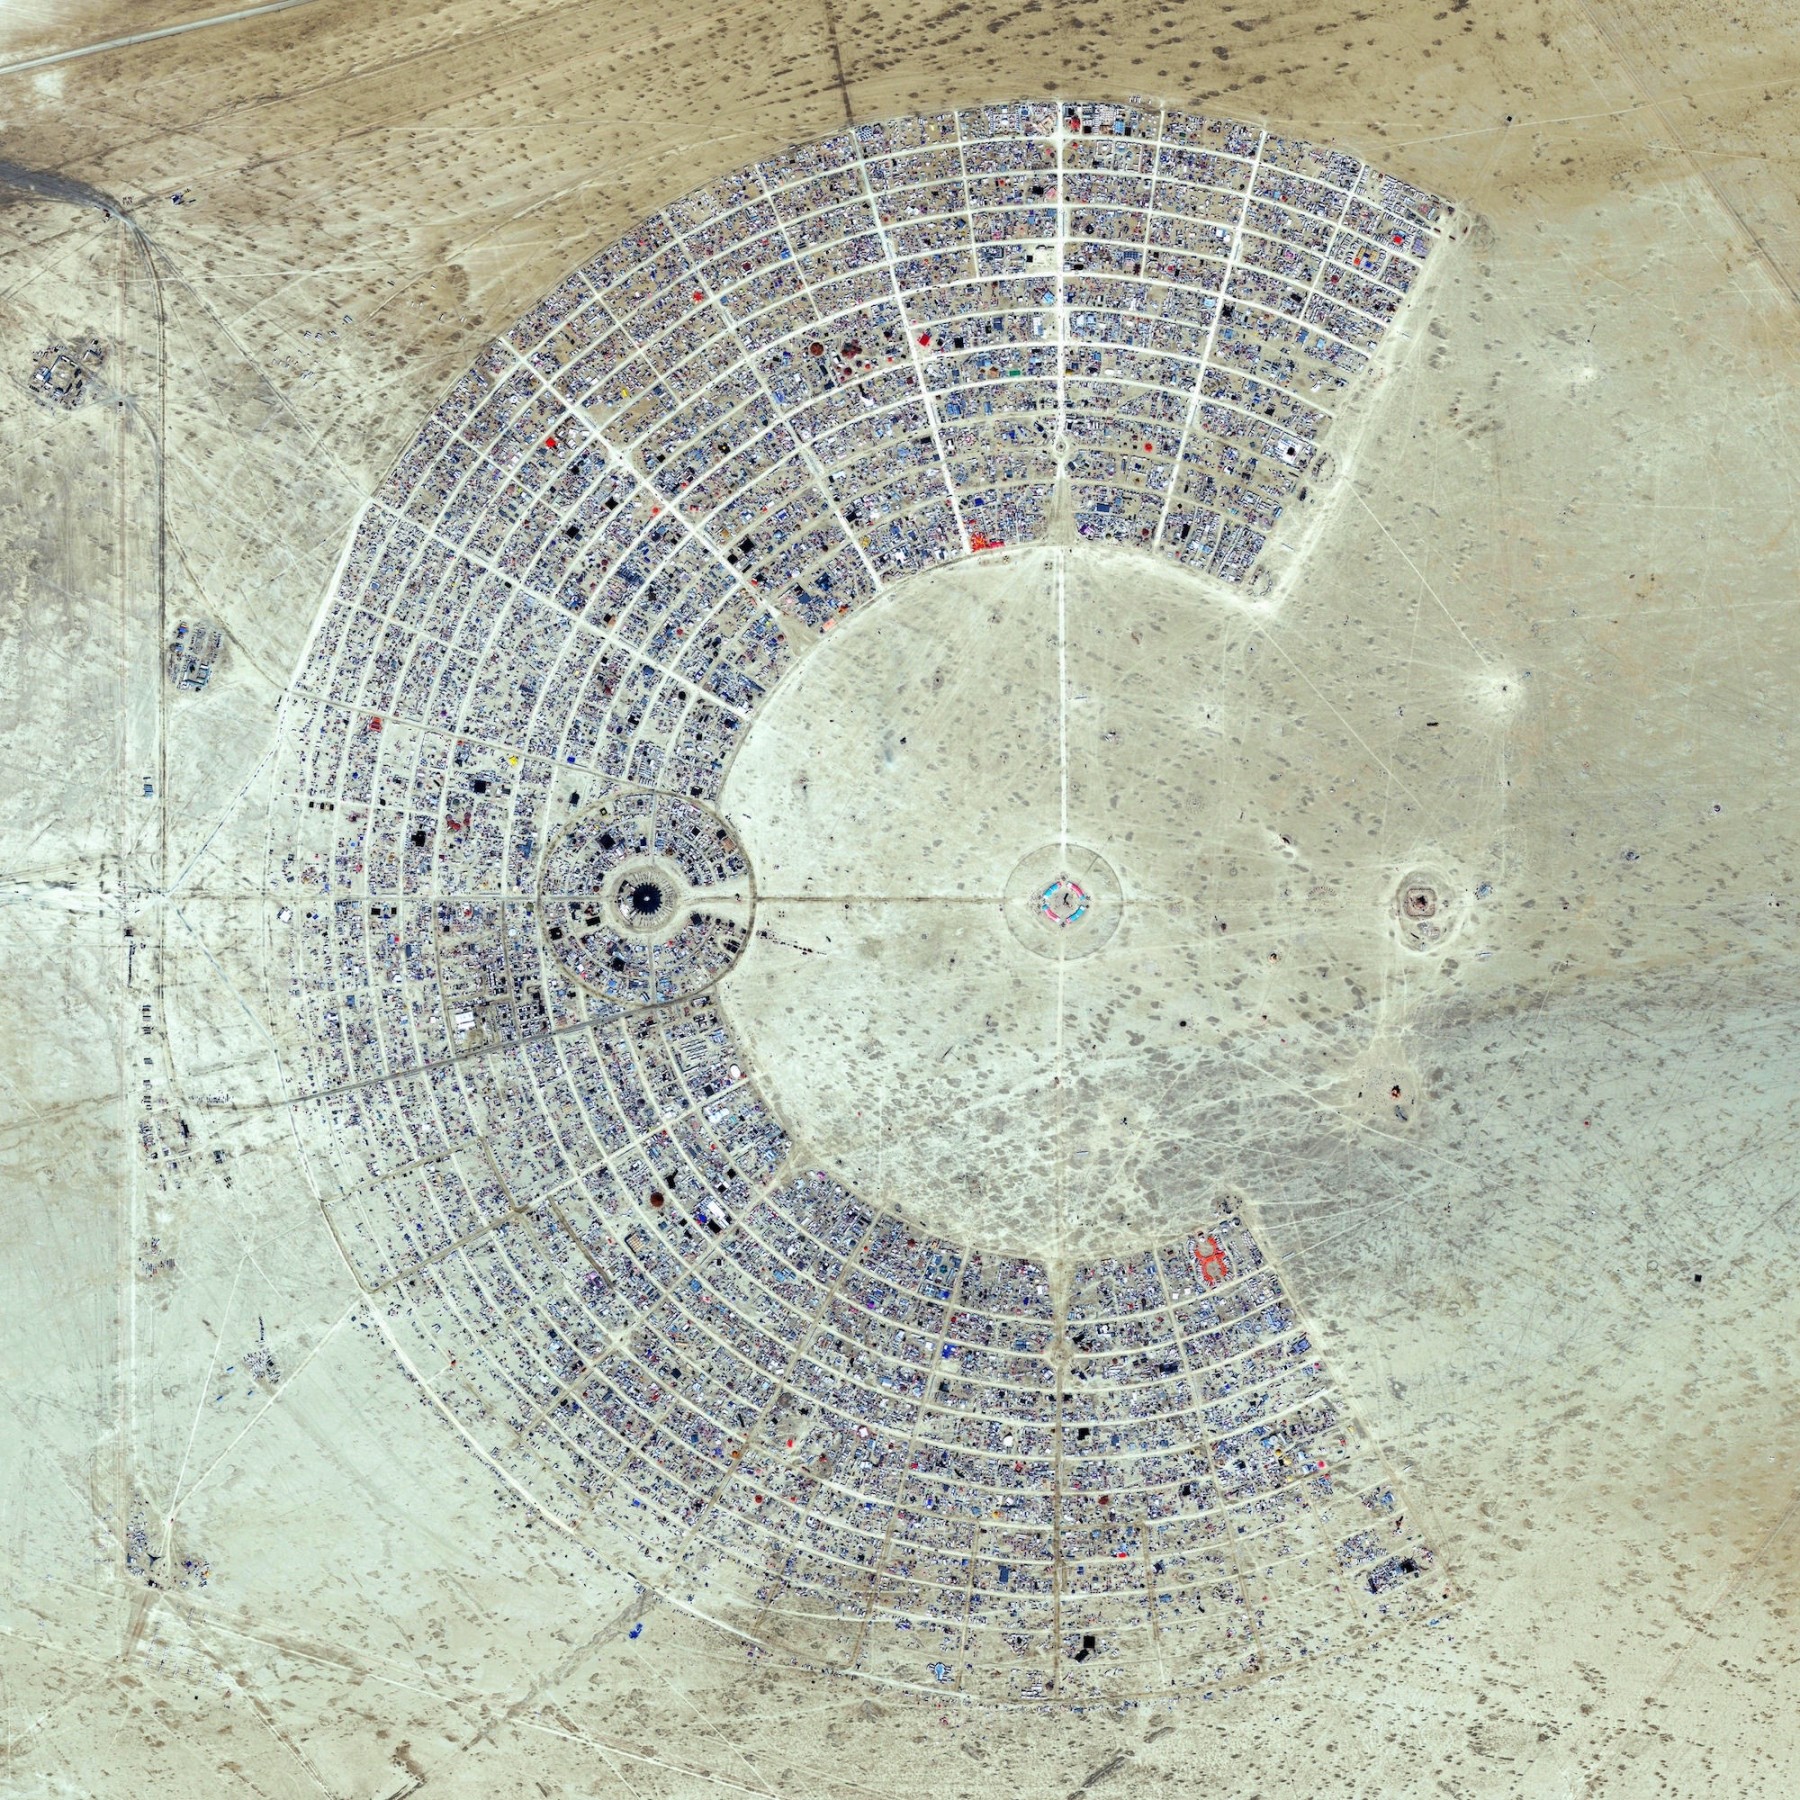 Burning Man, Black Rock City, Nevada